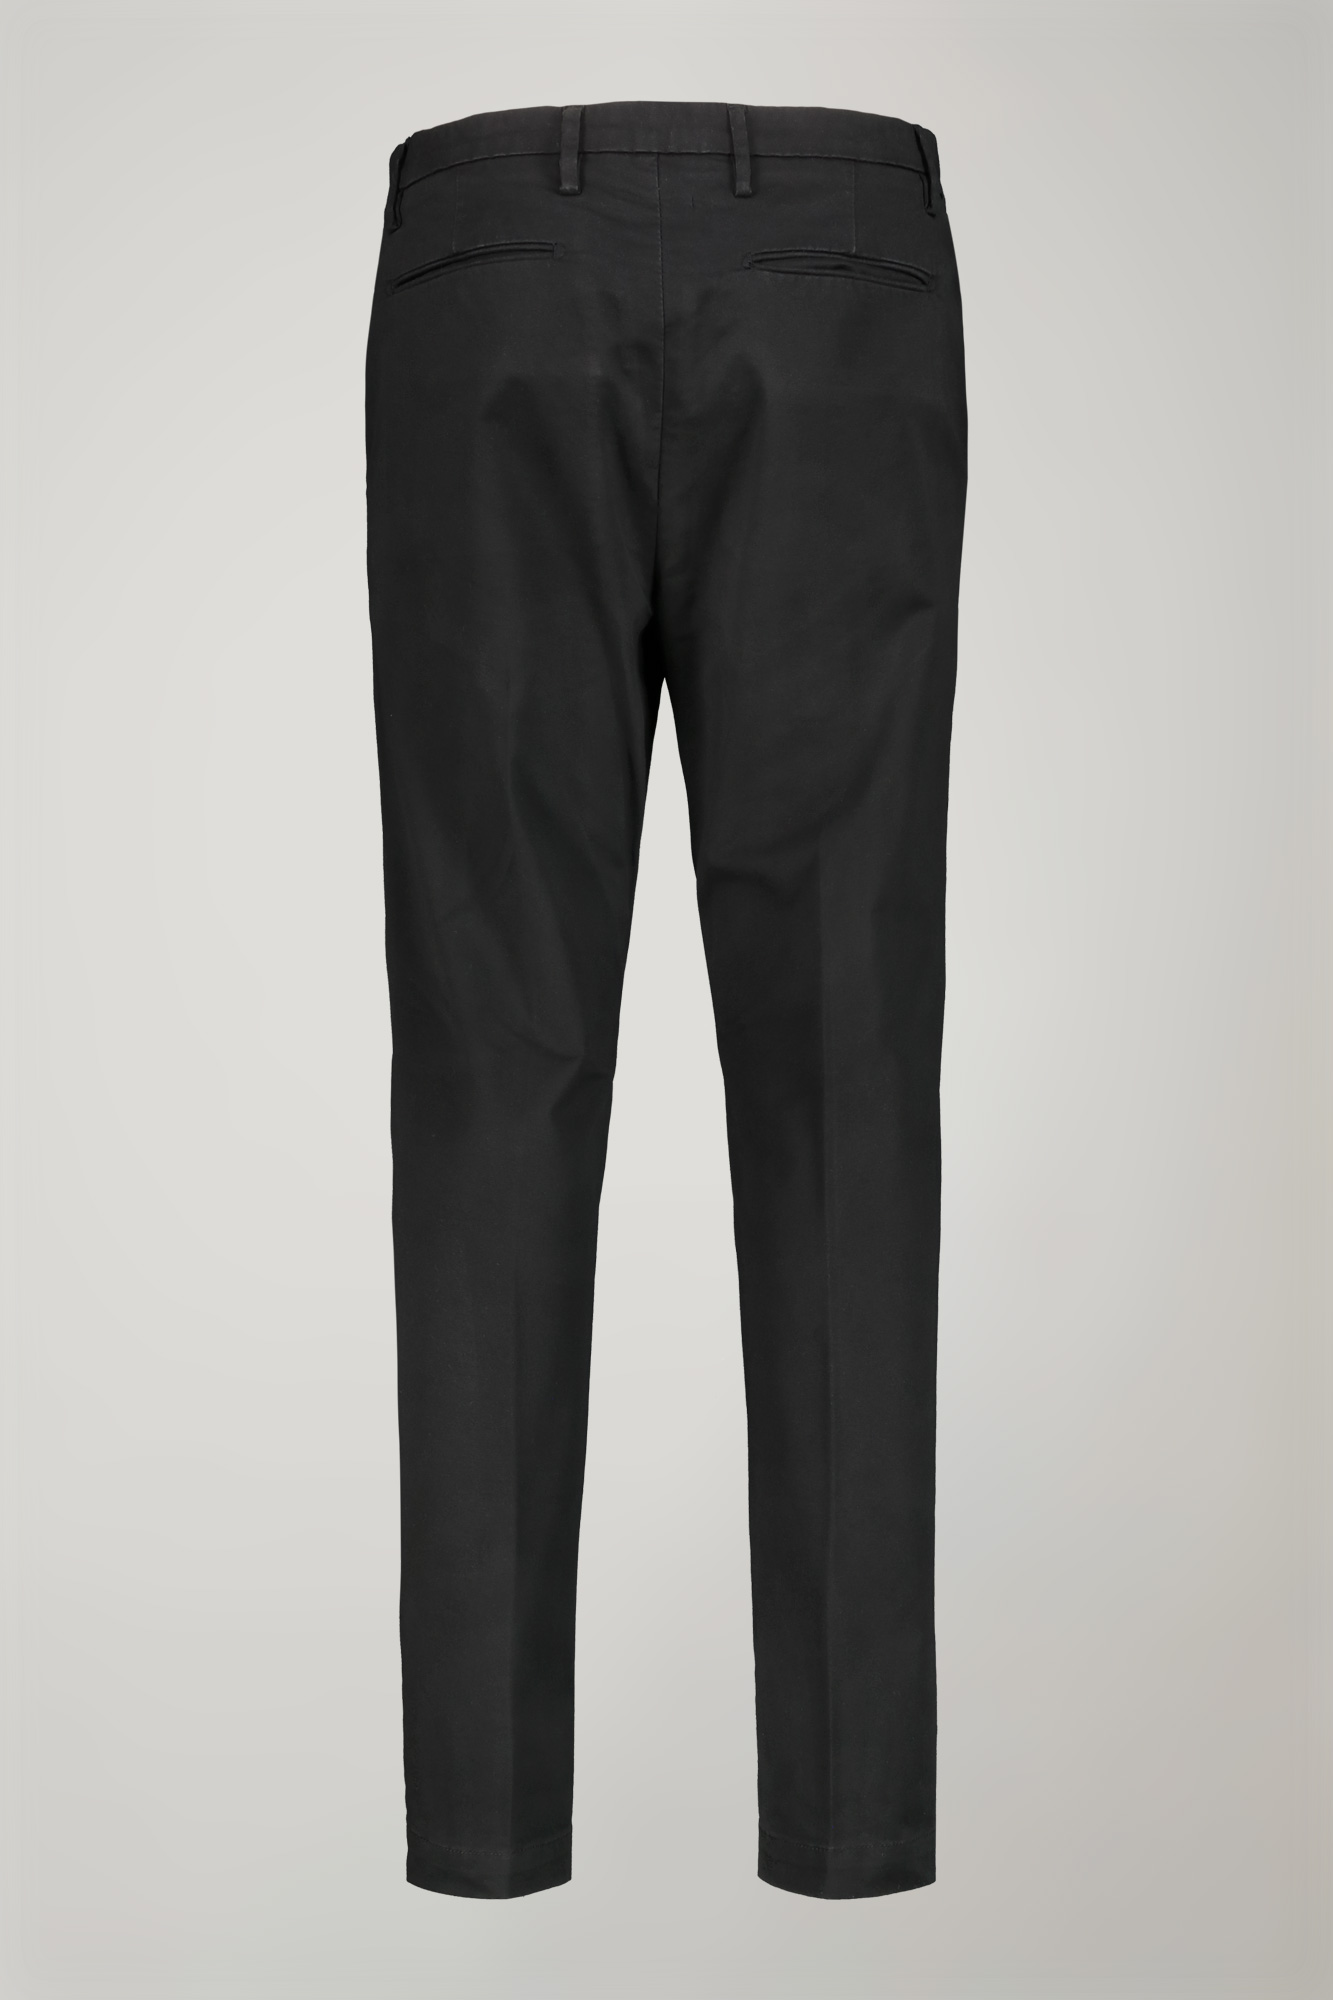 Pantalone chino uomo classico costruzione twill elasticizzato perfect fit image number null